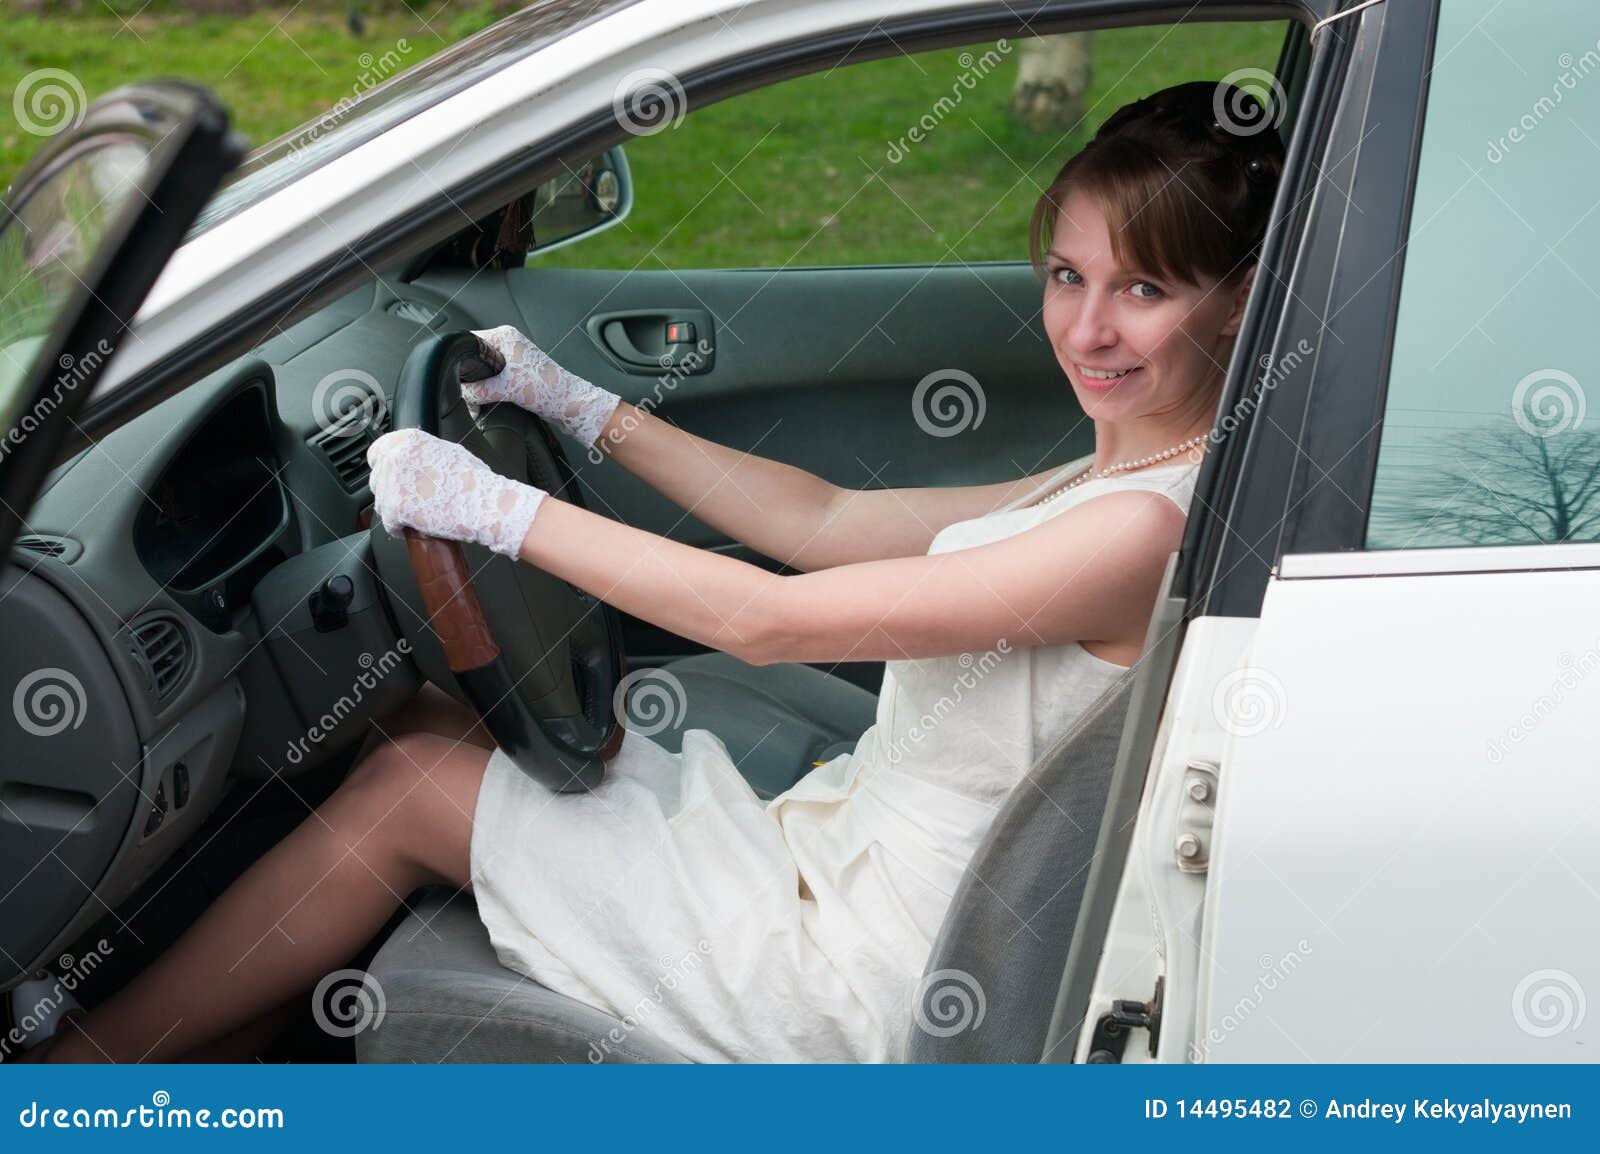 На пассажирском сидении автомобиля. Девушка водитель. Девушка в платье за рулем. Девушка на пассажирском сиденье автомобиля.